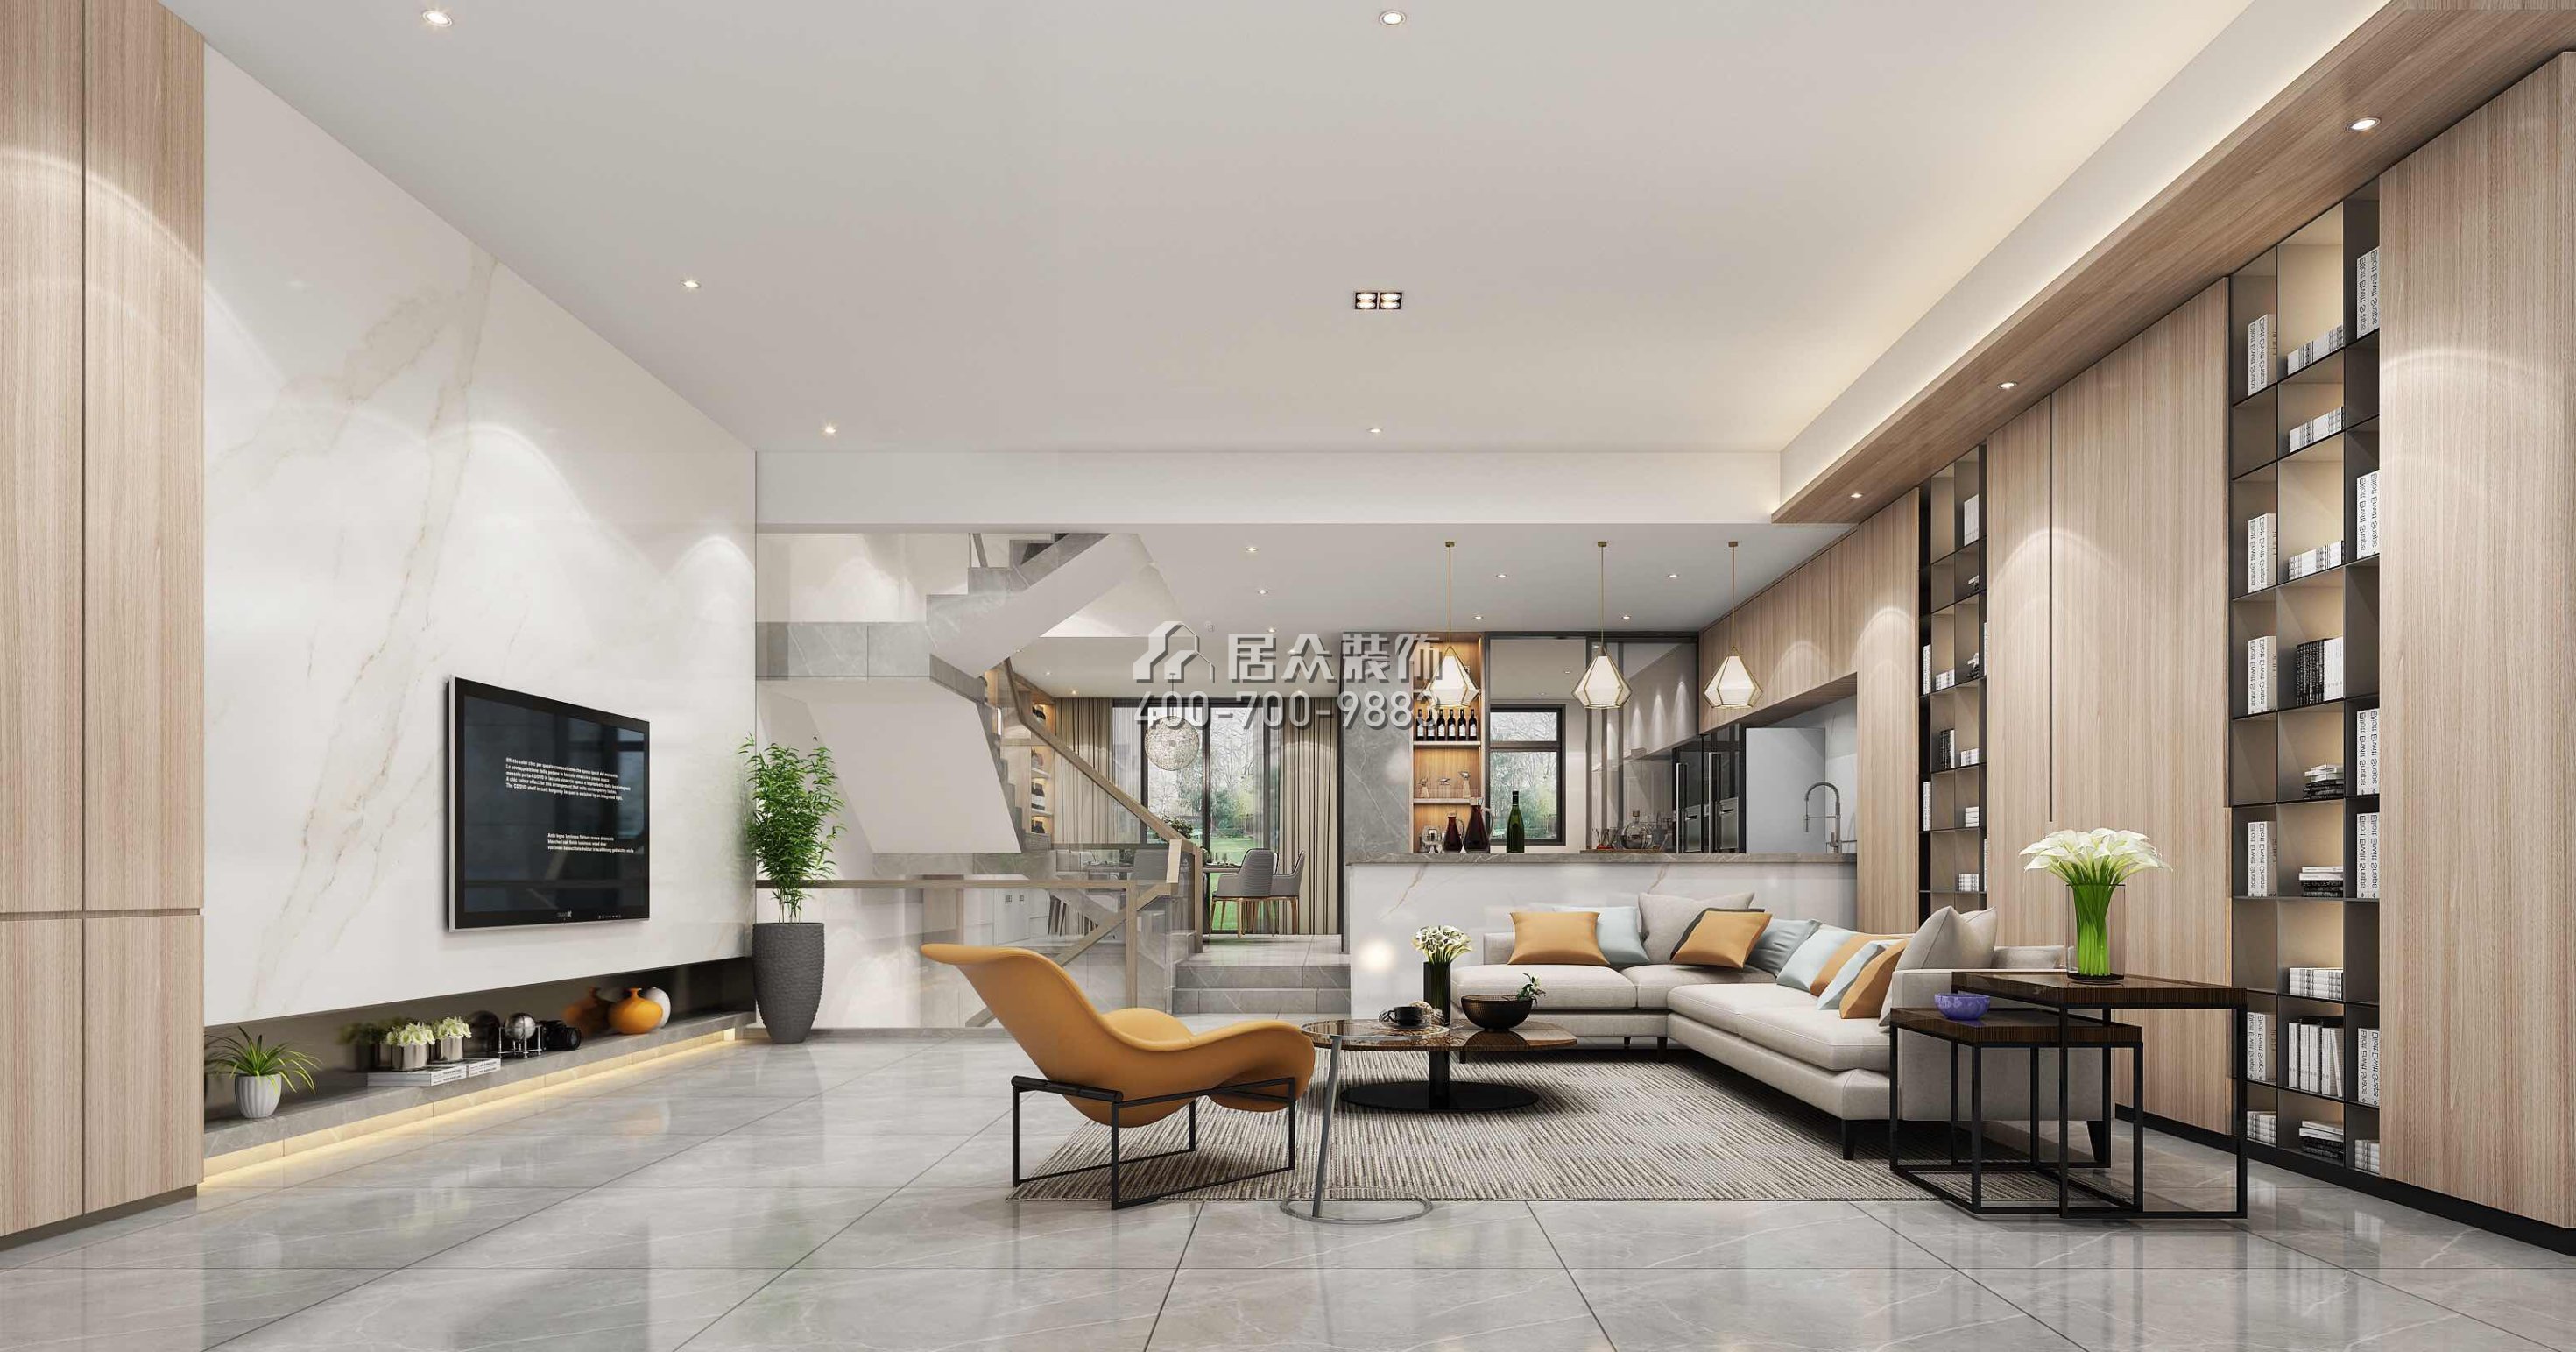 豐泰觀山420平方米現代簡約風格別墅戶型客廳裝修效果圖